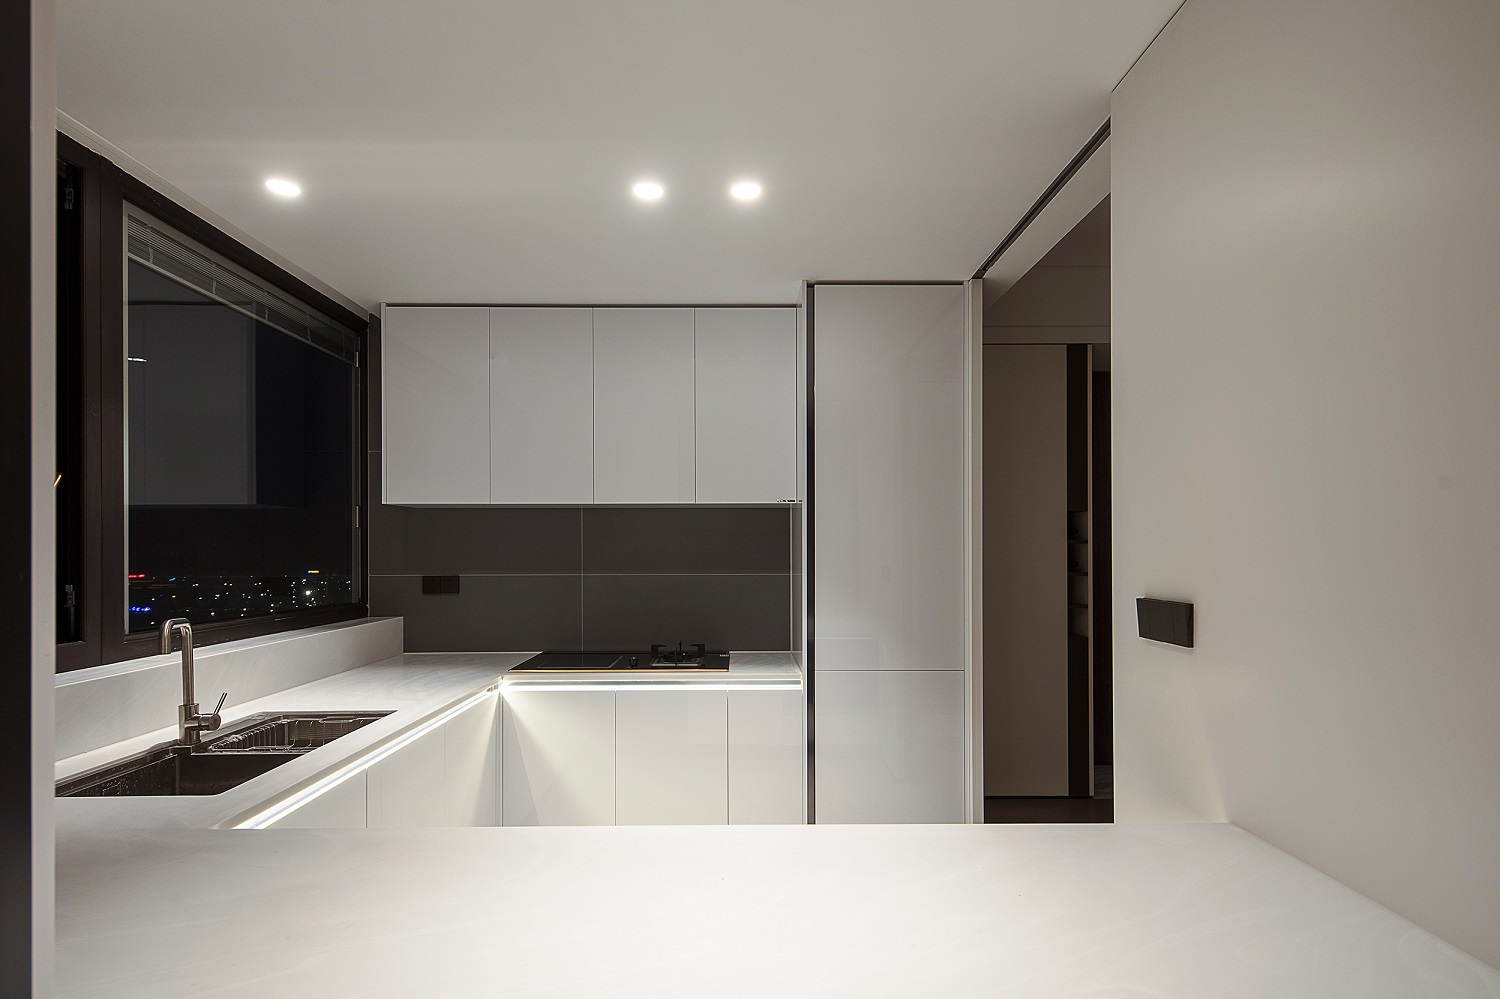 结合轻奢风格的典型特征，厨房以白色为主，强调了明朗的空间观感。